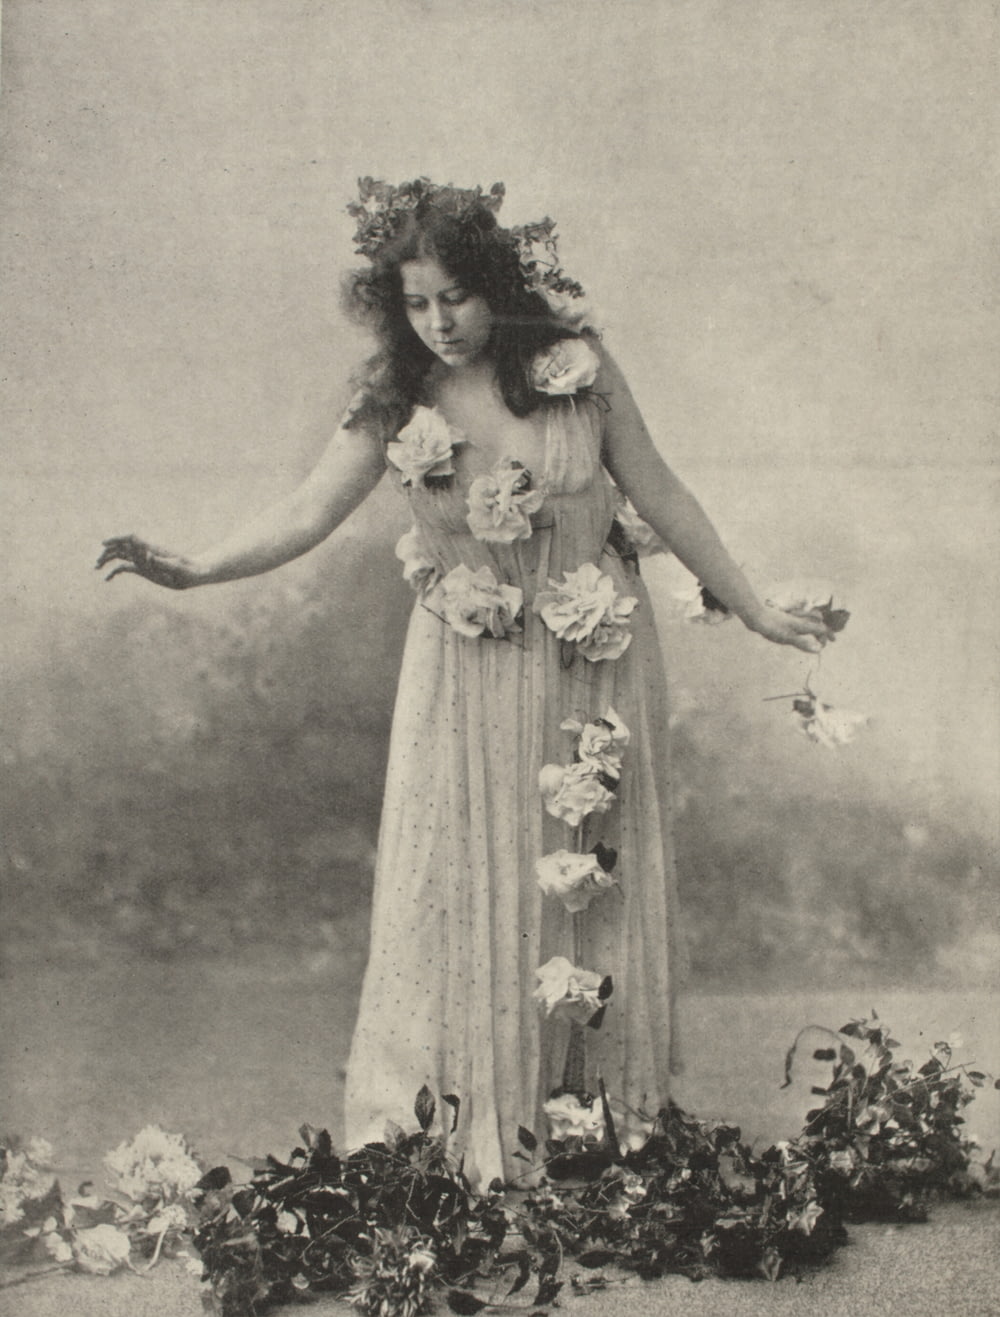 꽃을 들고 있는 여자의 그레이스케일 사진